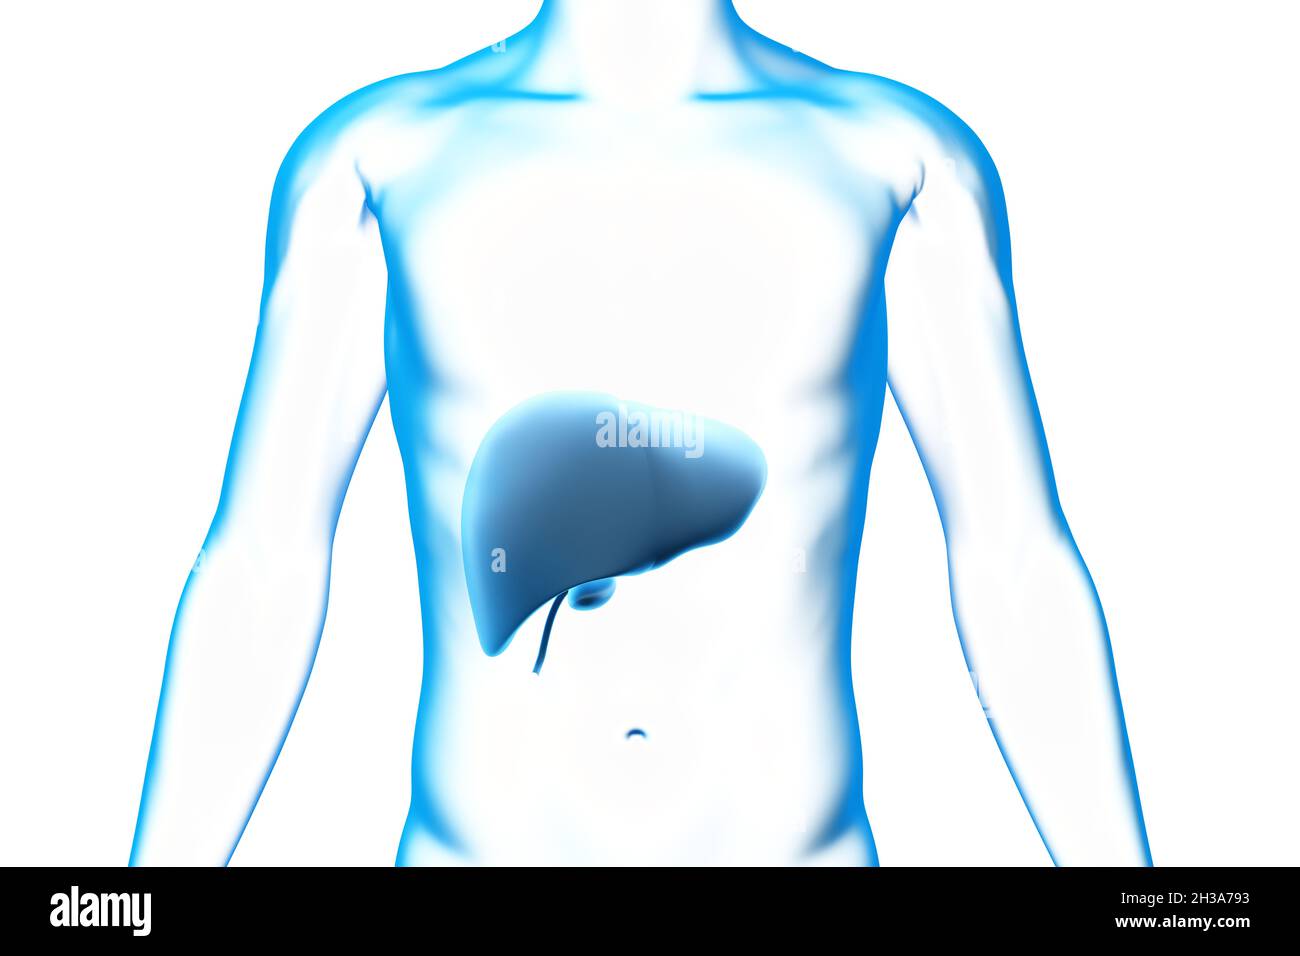 Leber und Gallenblase, Organ, menschlicher Körper, medizinisches 3D-Modell Stockfoto